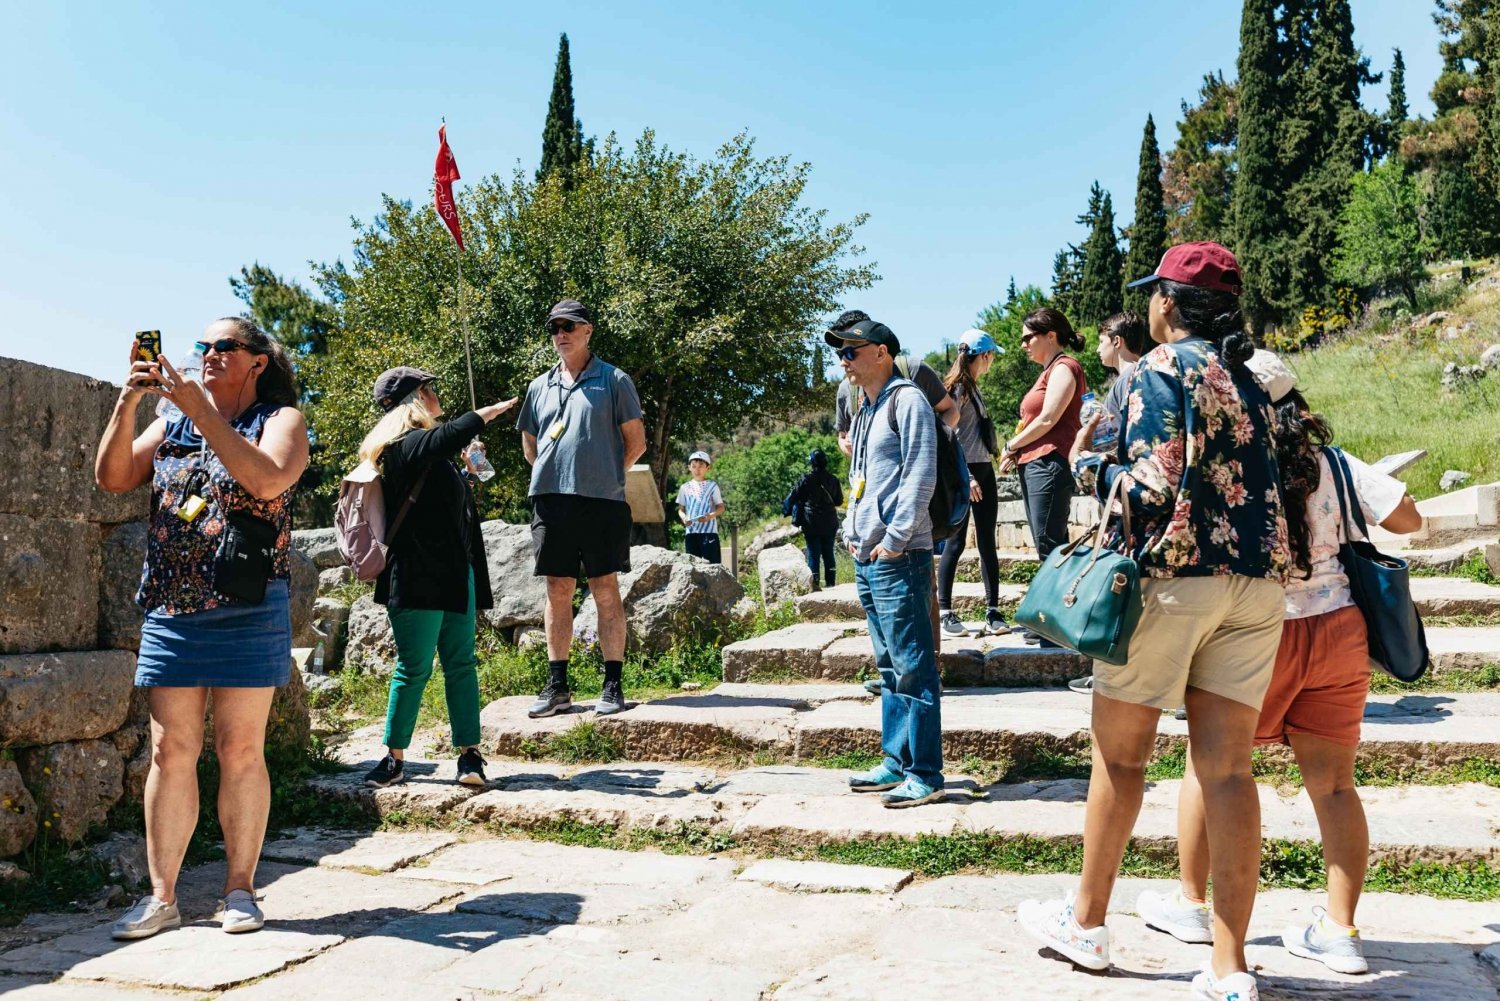 Athen: Delphi dagstur med licenseret guidet tur og afhentning